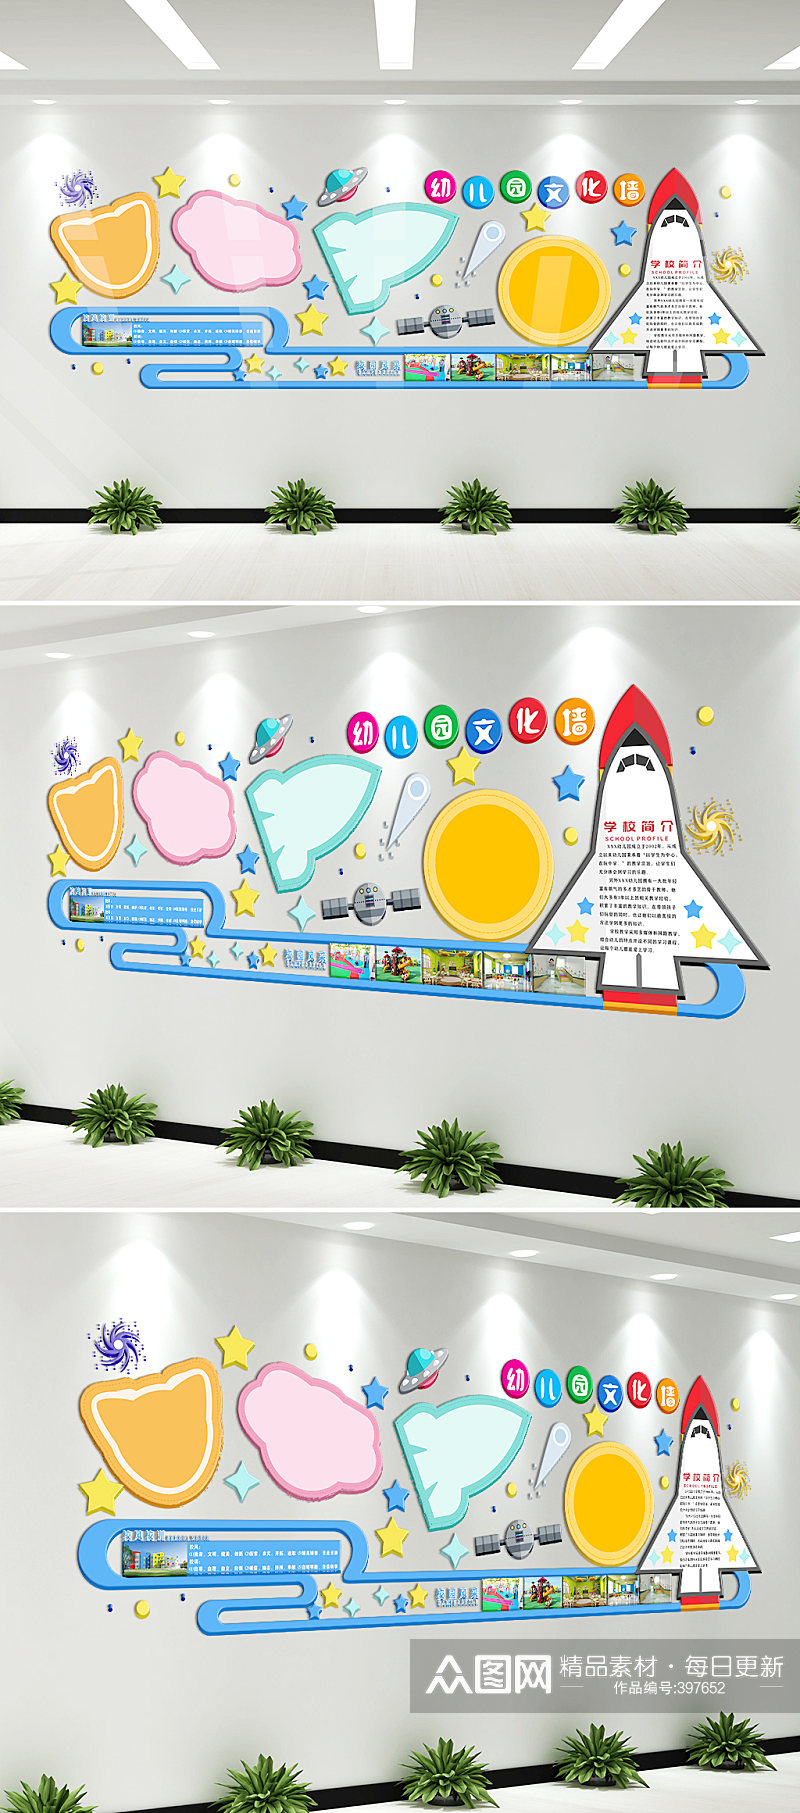 宇宙探索科技幼儿园创意文化墙设计图素材